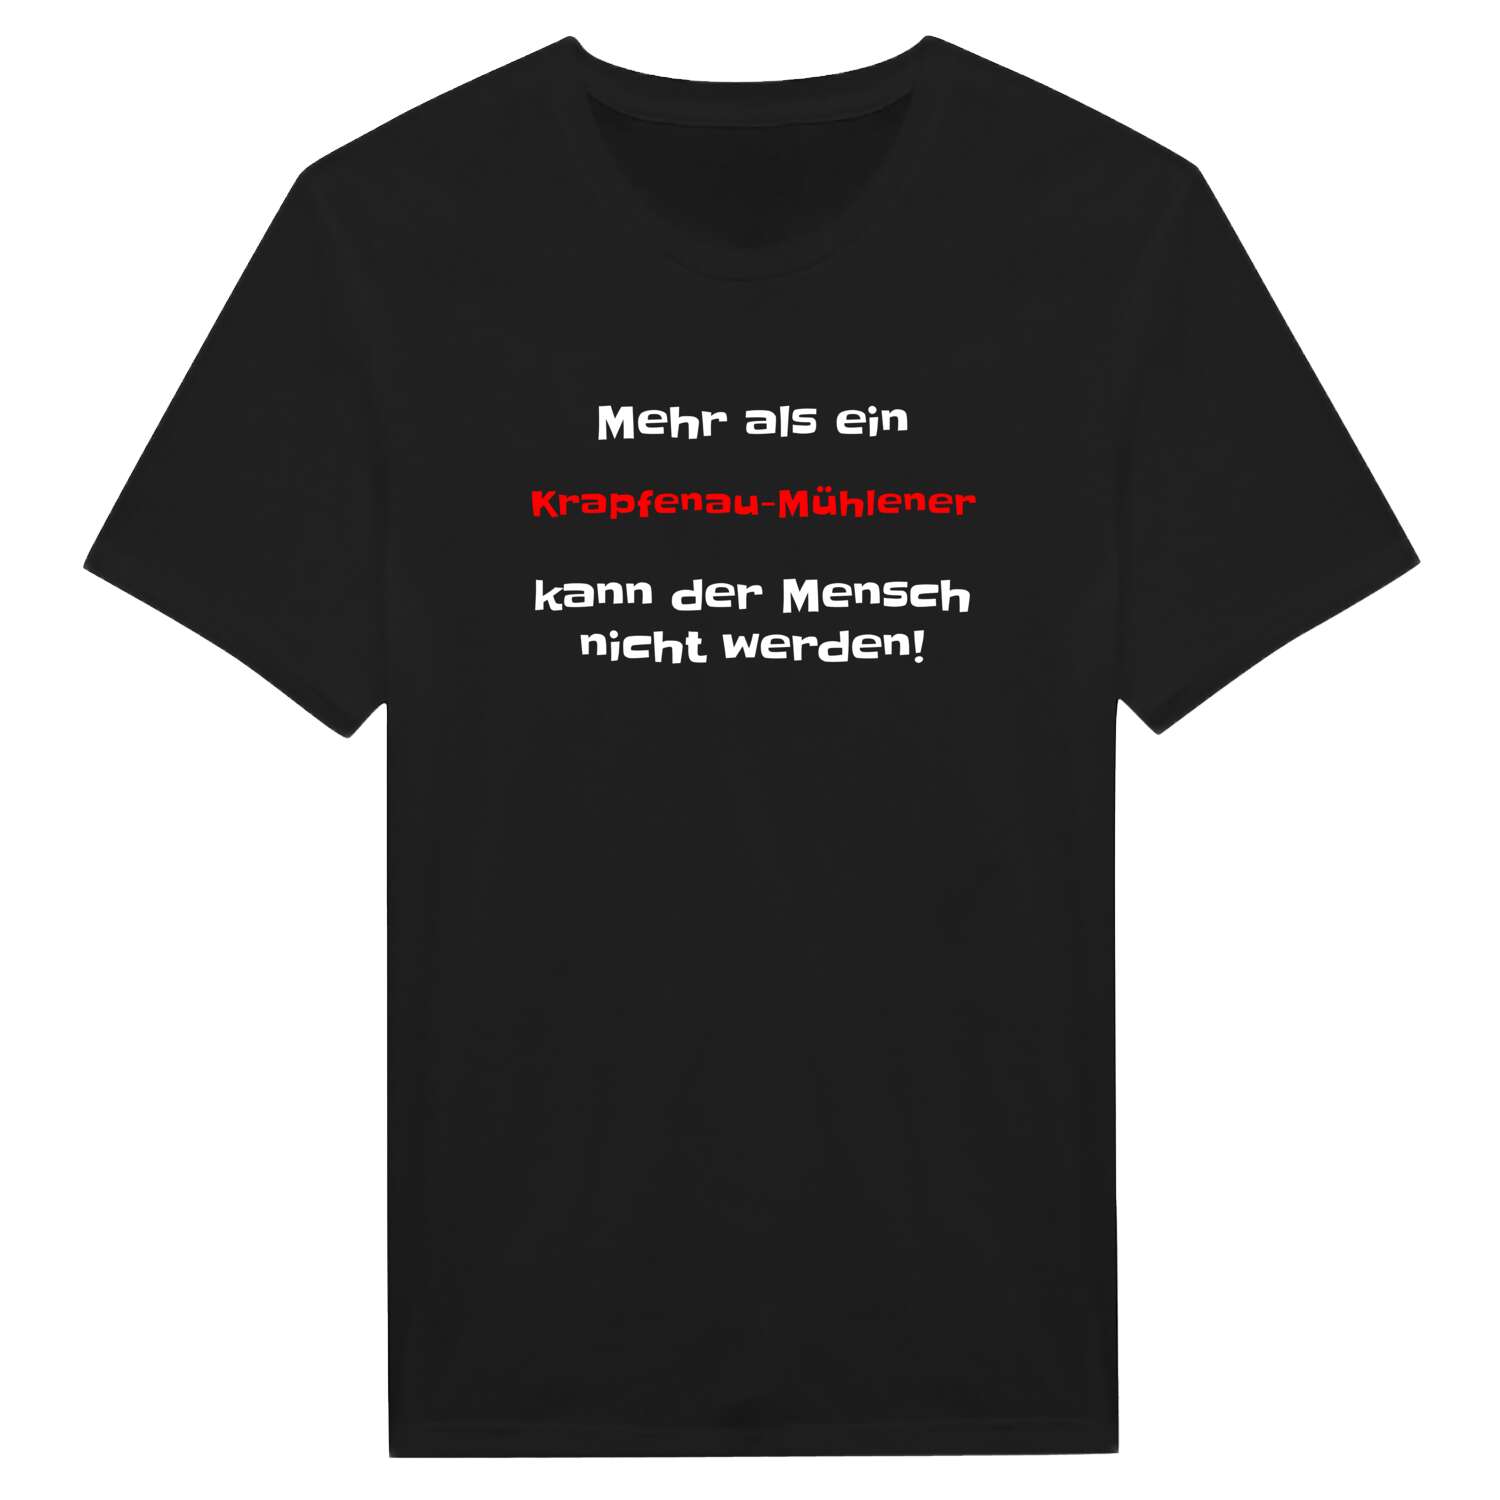 Krapfenau-Mühle T-Shirt »Mehr als ein«